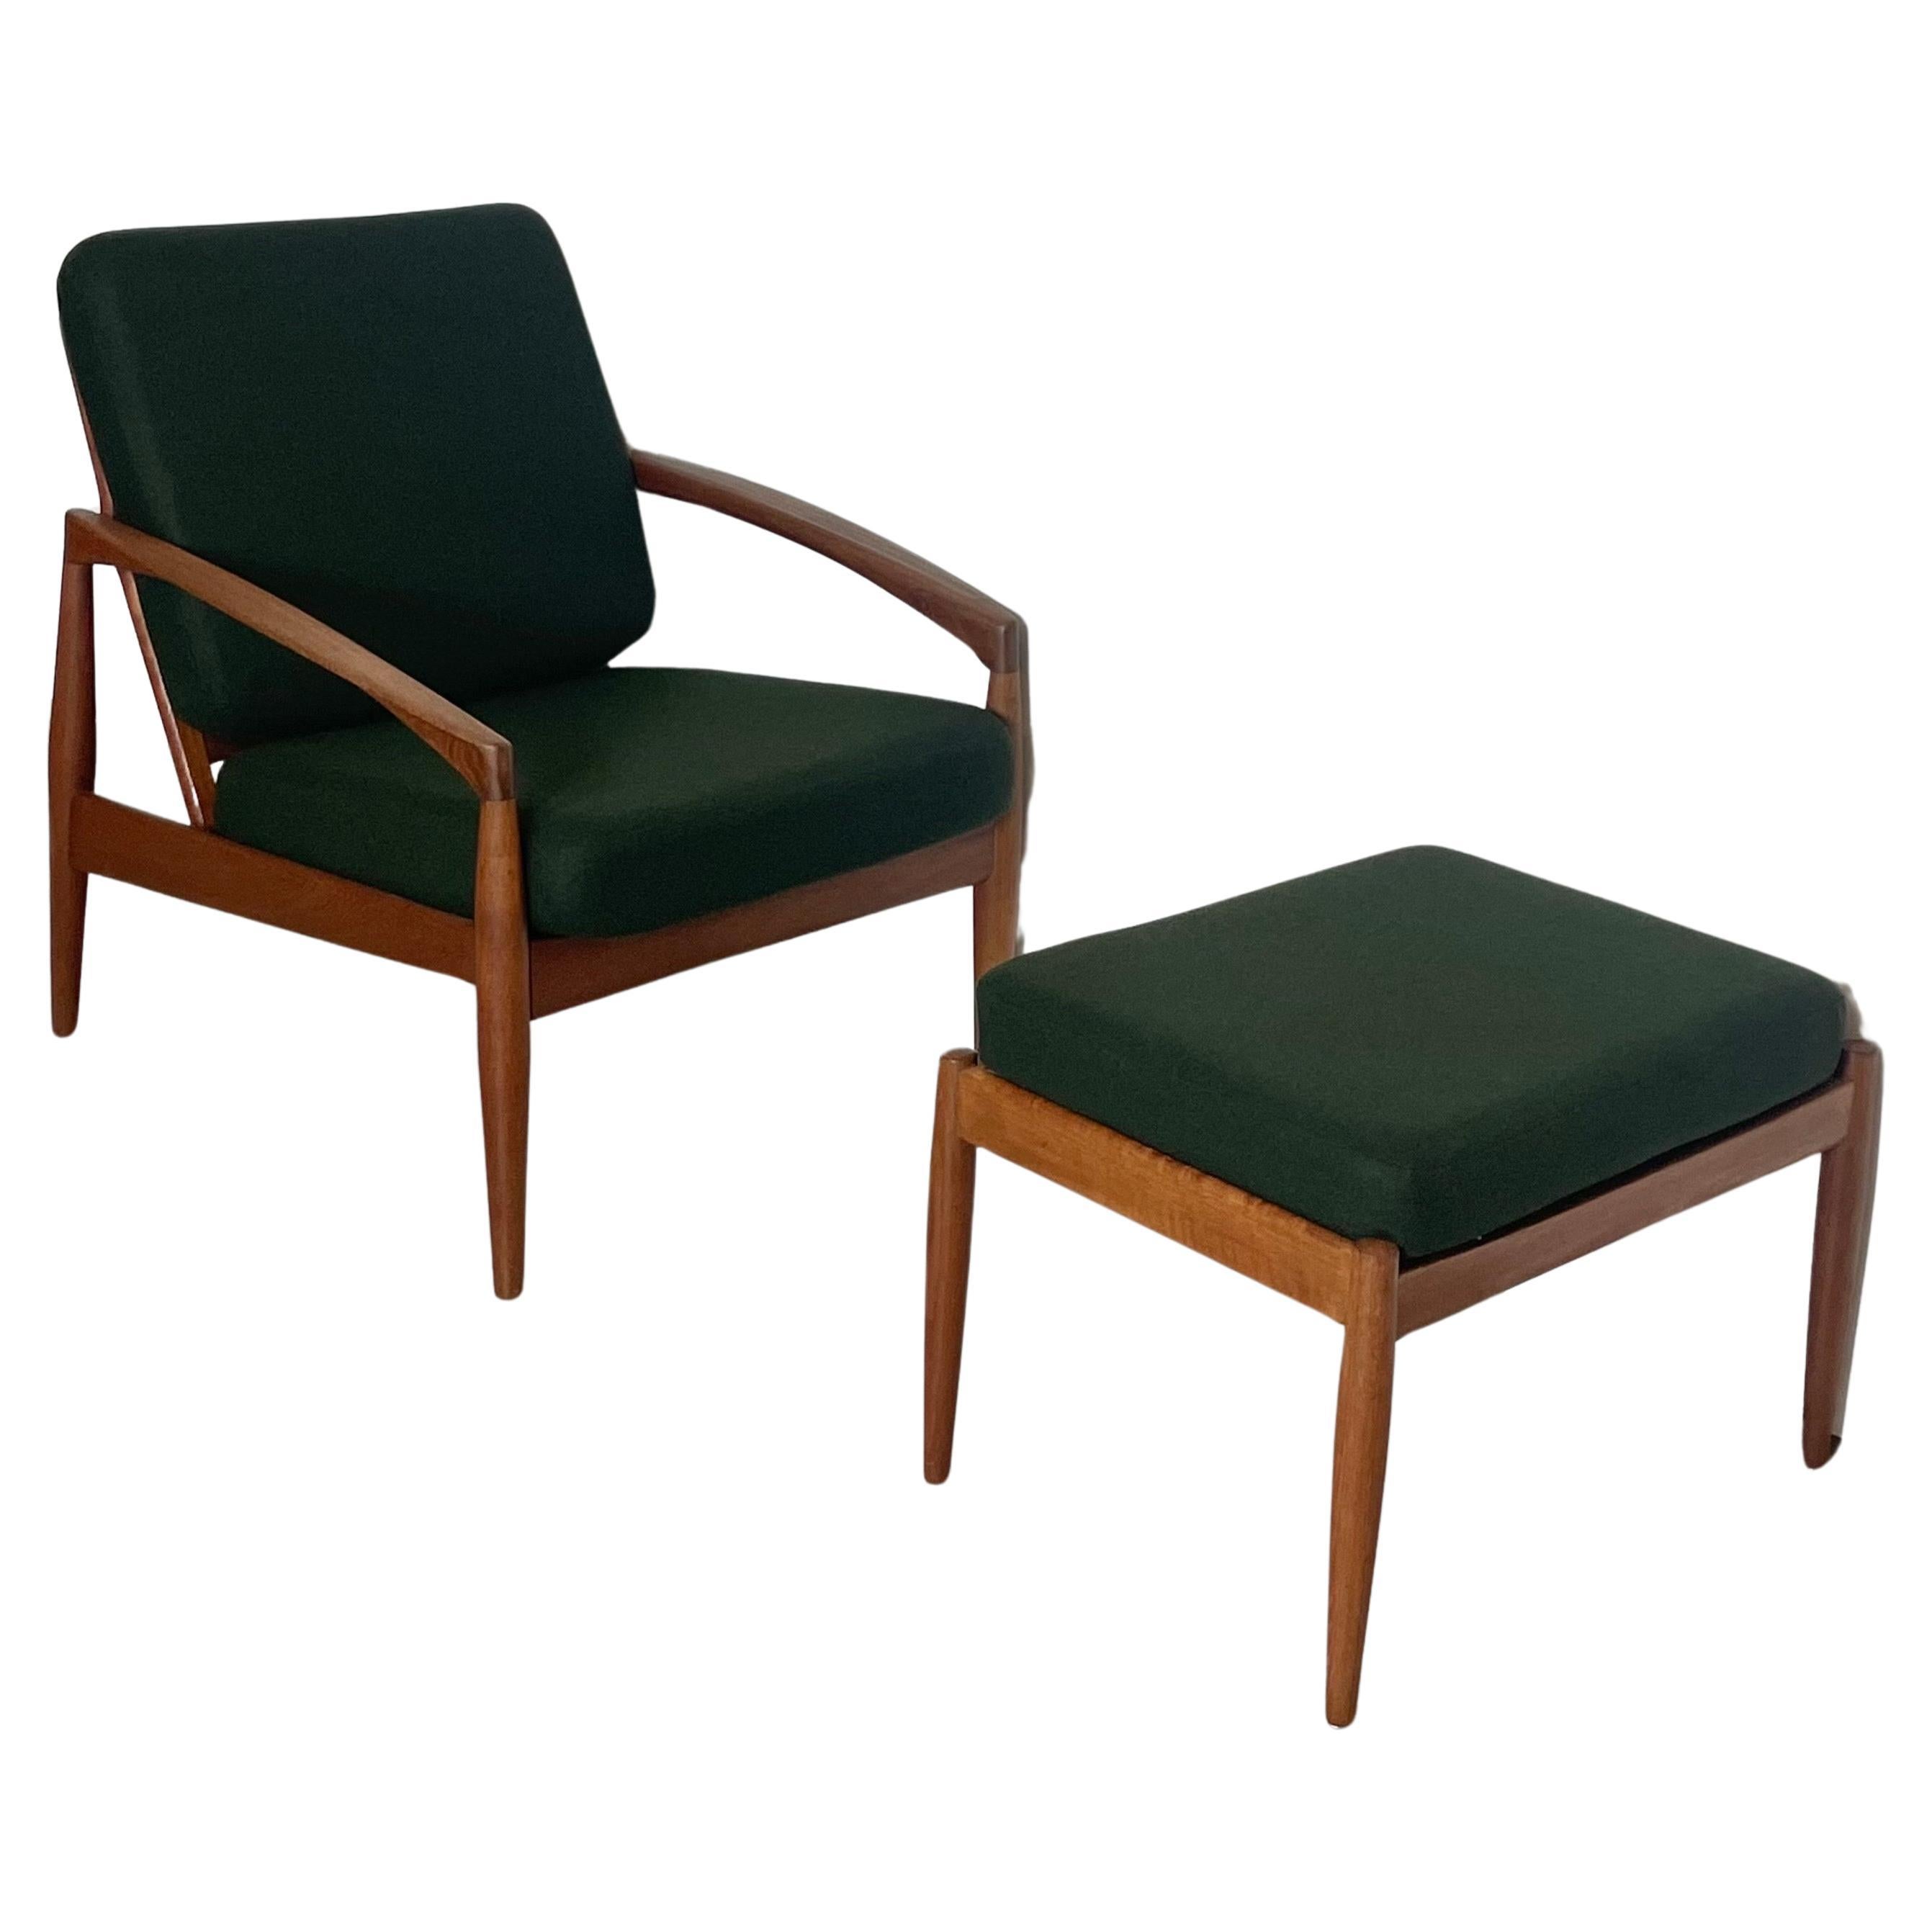 Un ensemble du design le plus célèbre de Kai Kristiansen : deux chaises 'Paper knife' fabriquées en bois de teck massif. L'une des chaises les plus gracieuses et les plus belles de la période moderne danoise. L'ensemble est complété par un ottomann